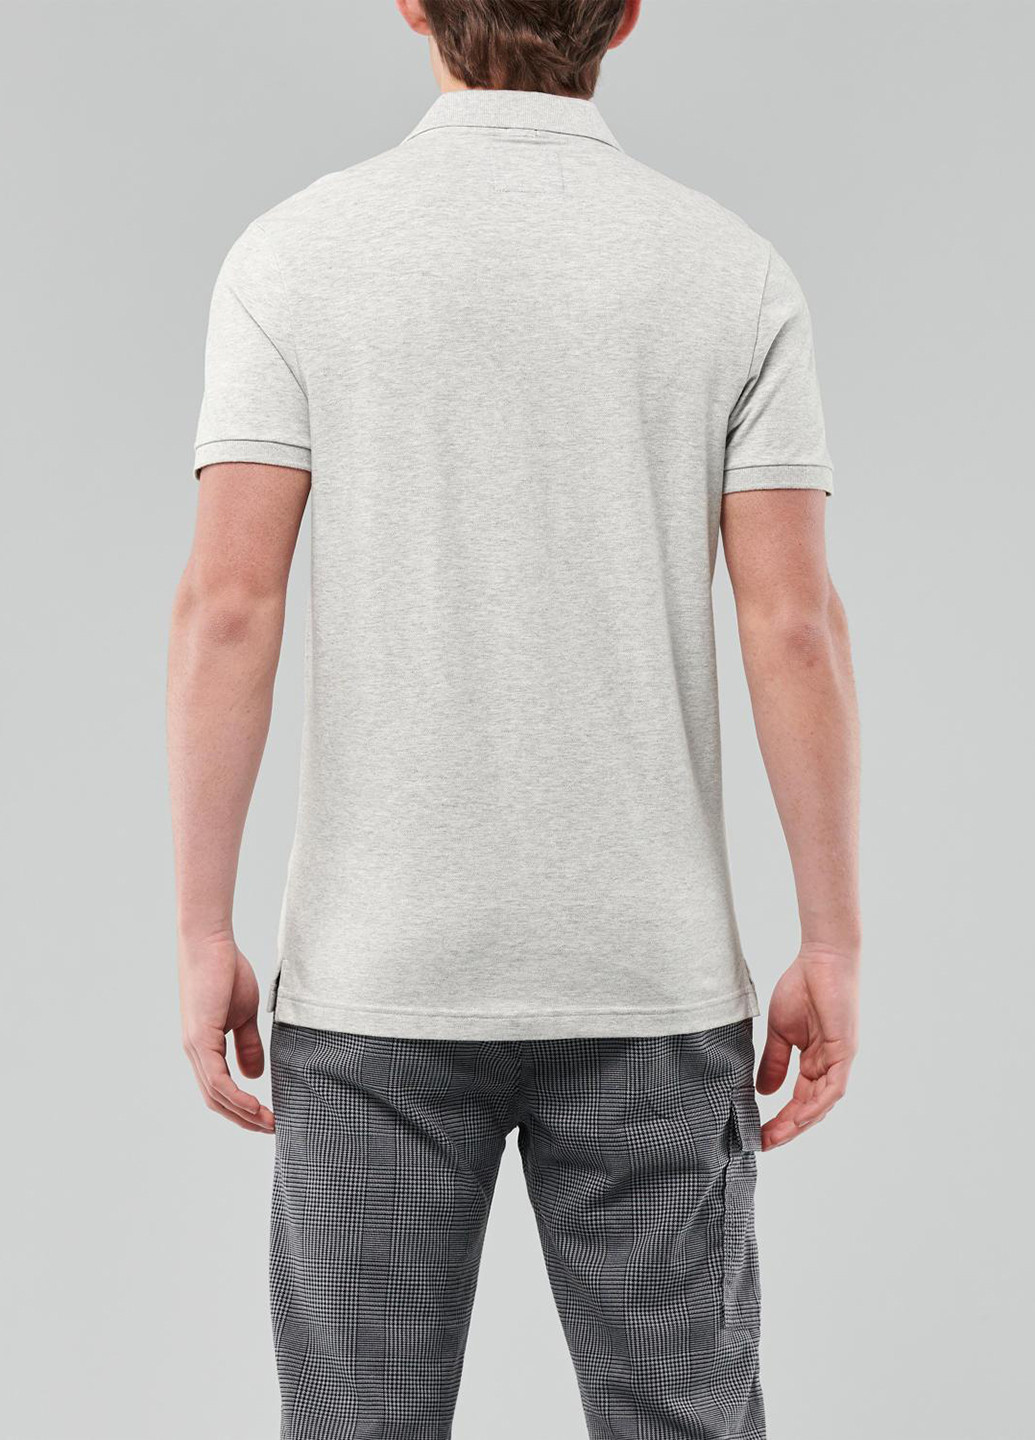 Серая футболка-поло для мужчин Hollister с логотипом